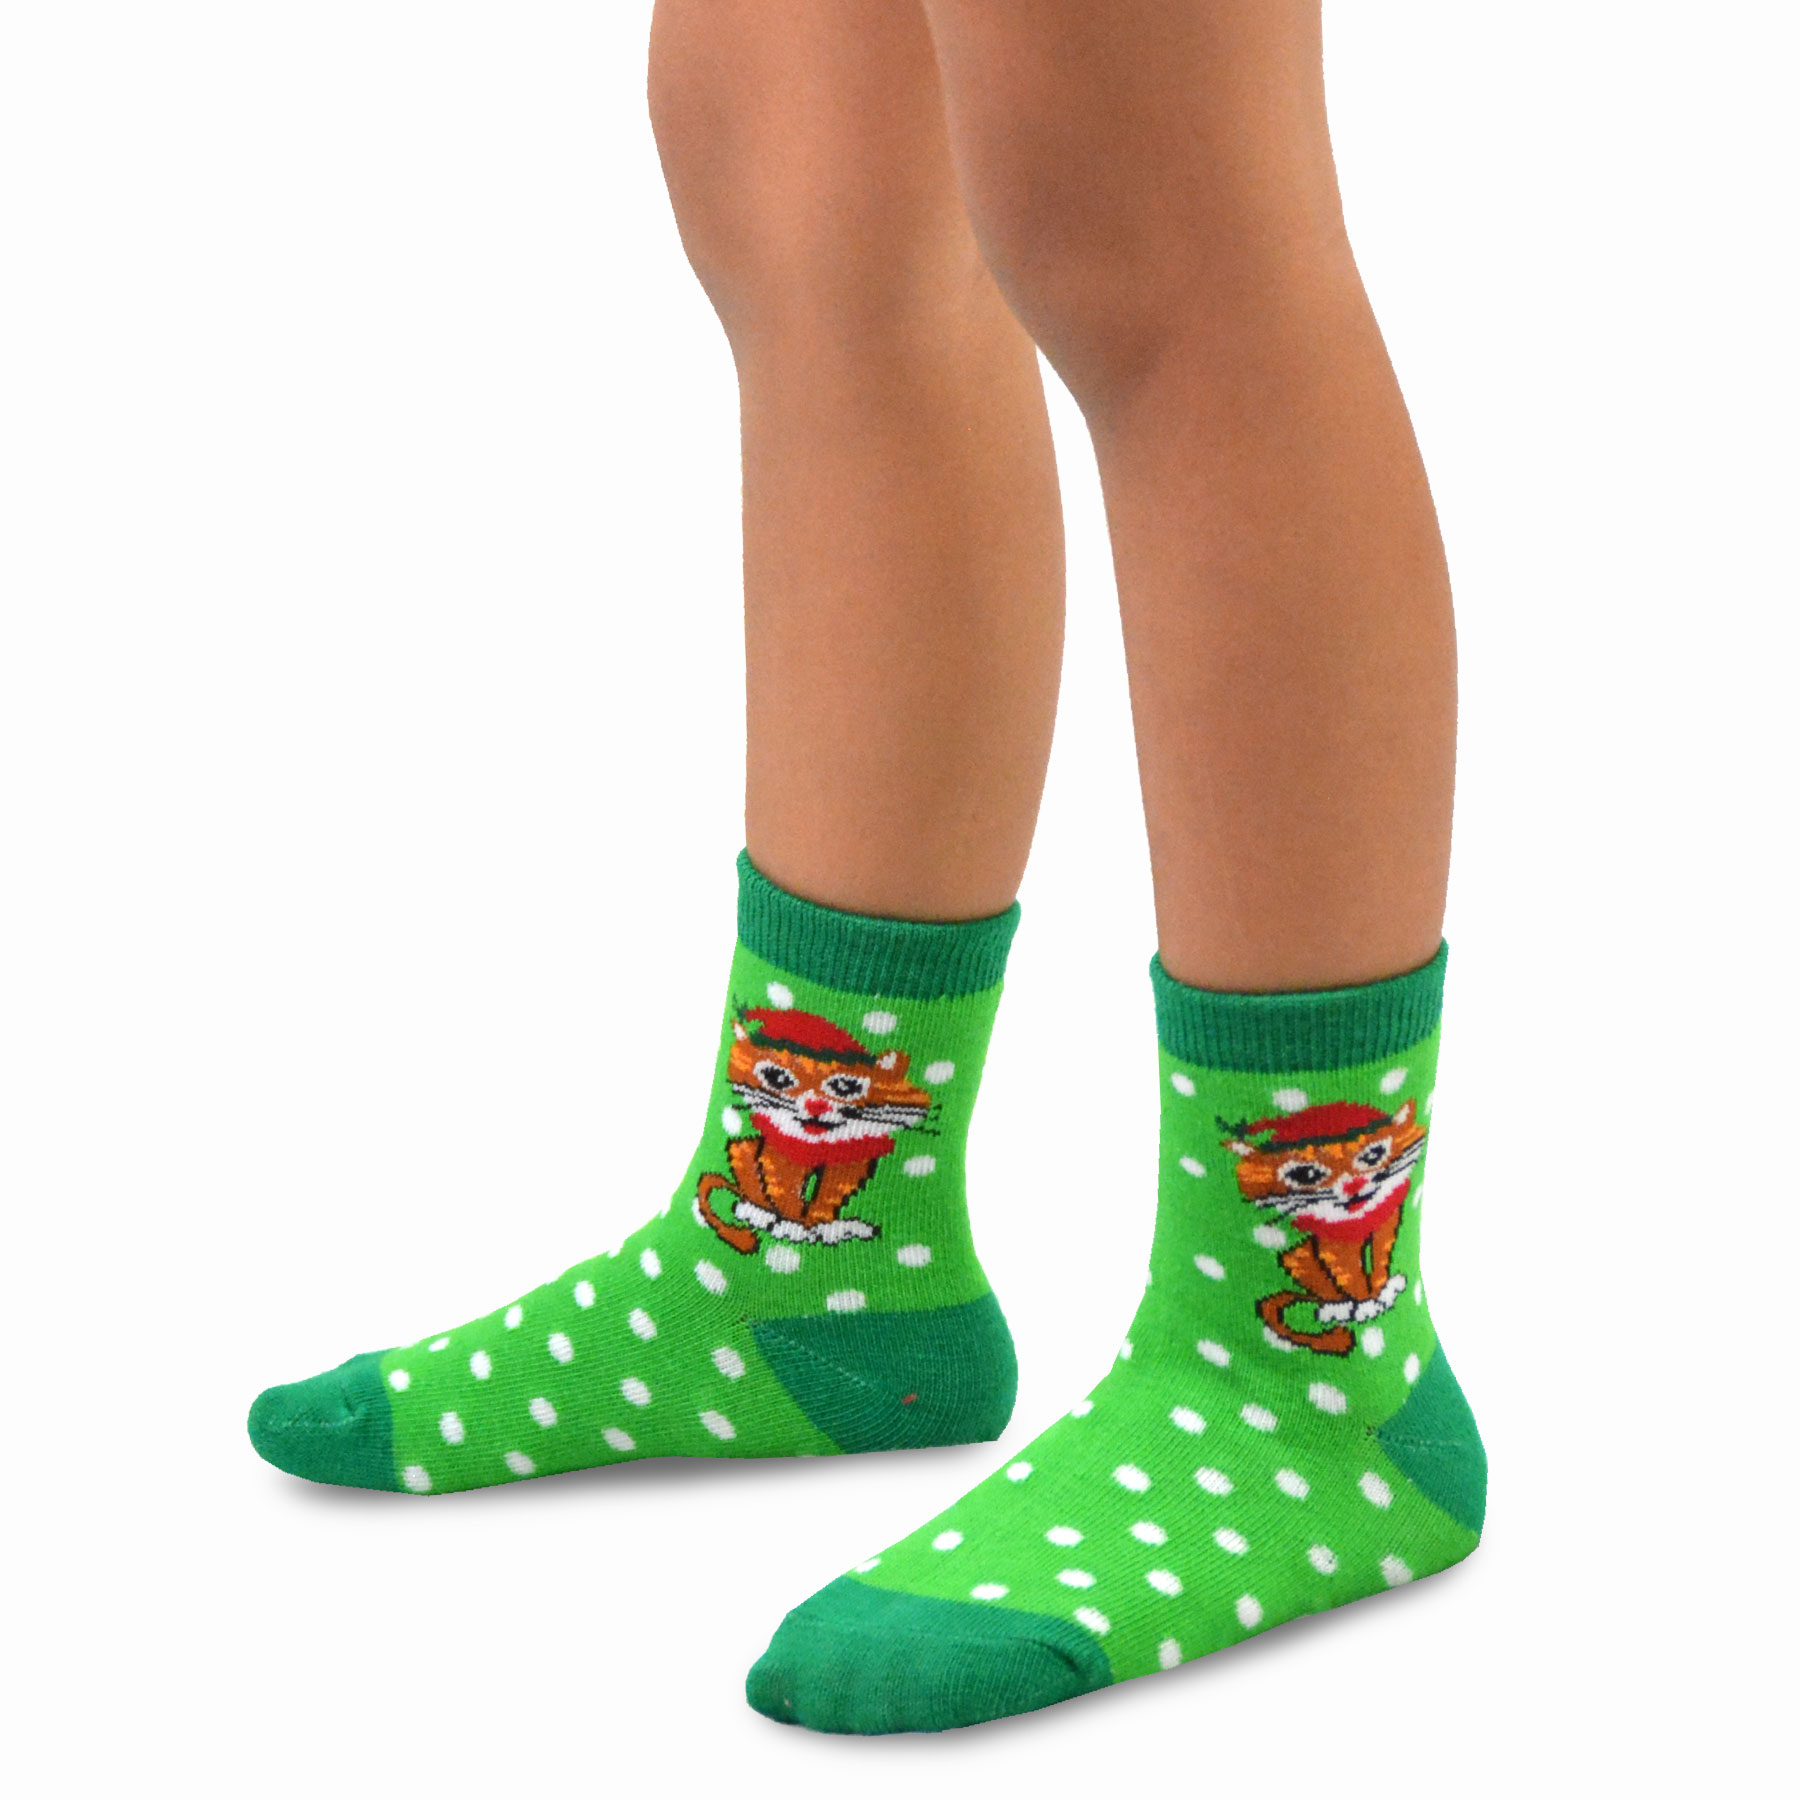 TeeHee Christmas Kids Cotton Fun Crew Socks 4-Pair Pack